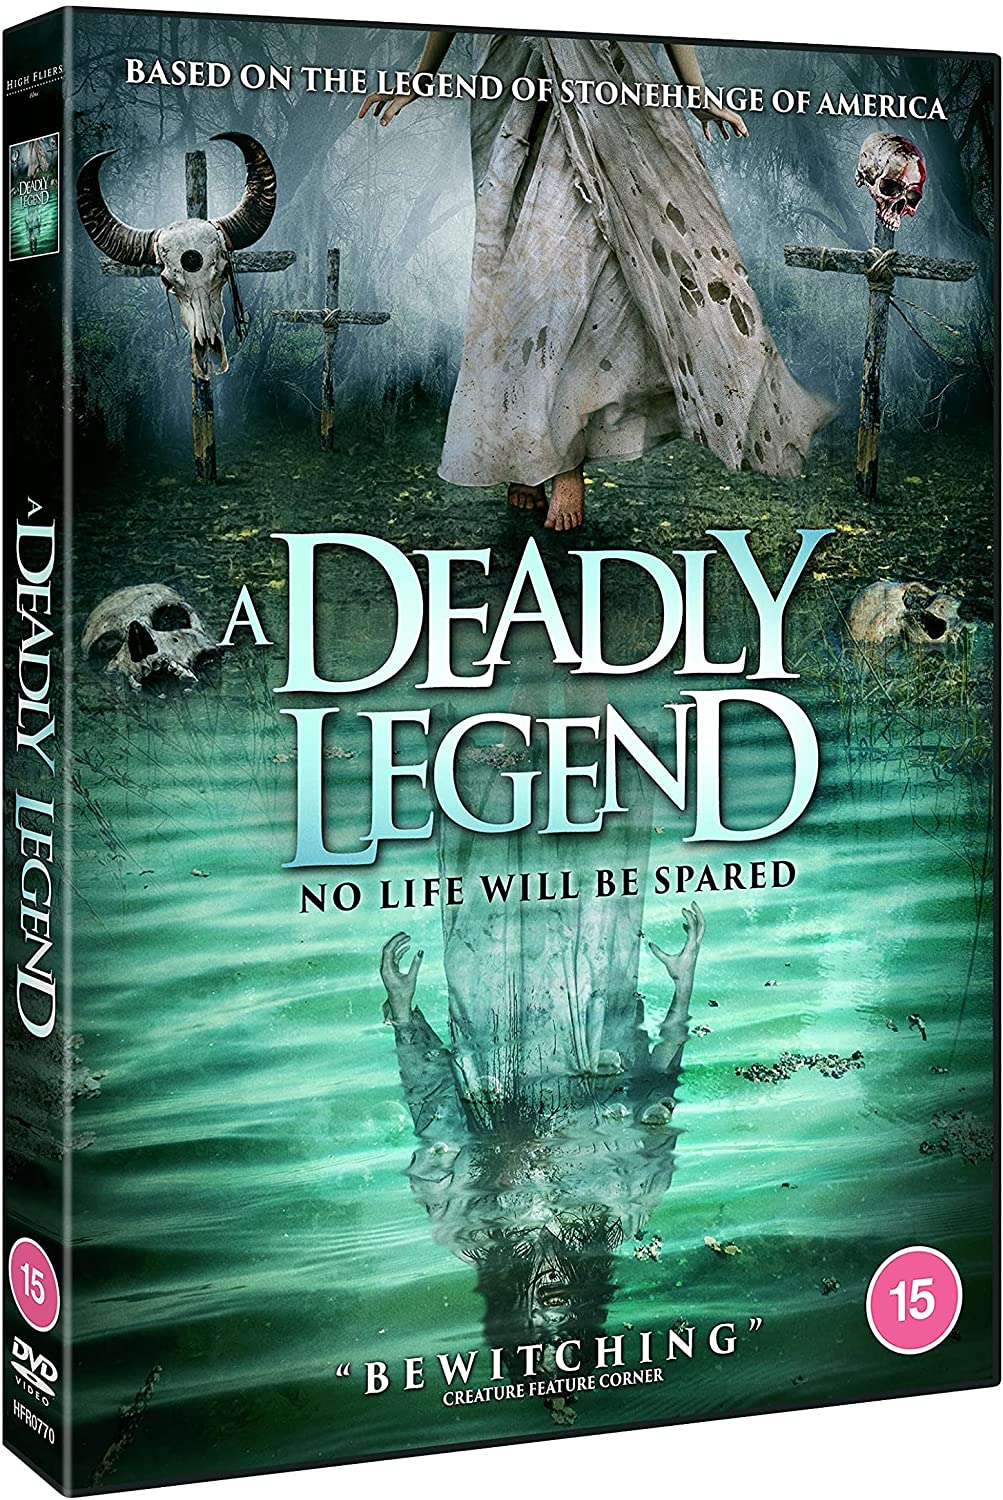 A Deadly Legend - Horror [DVD]